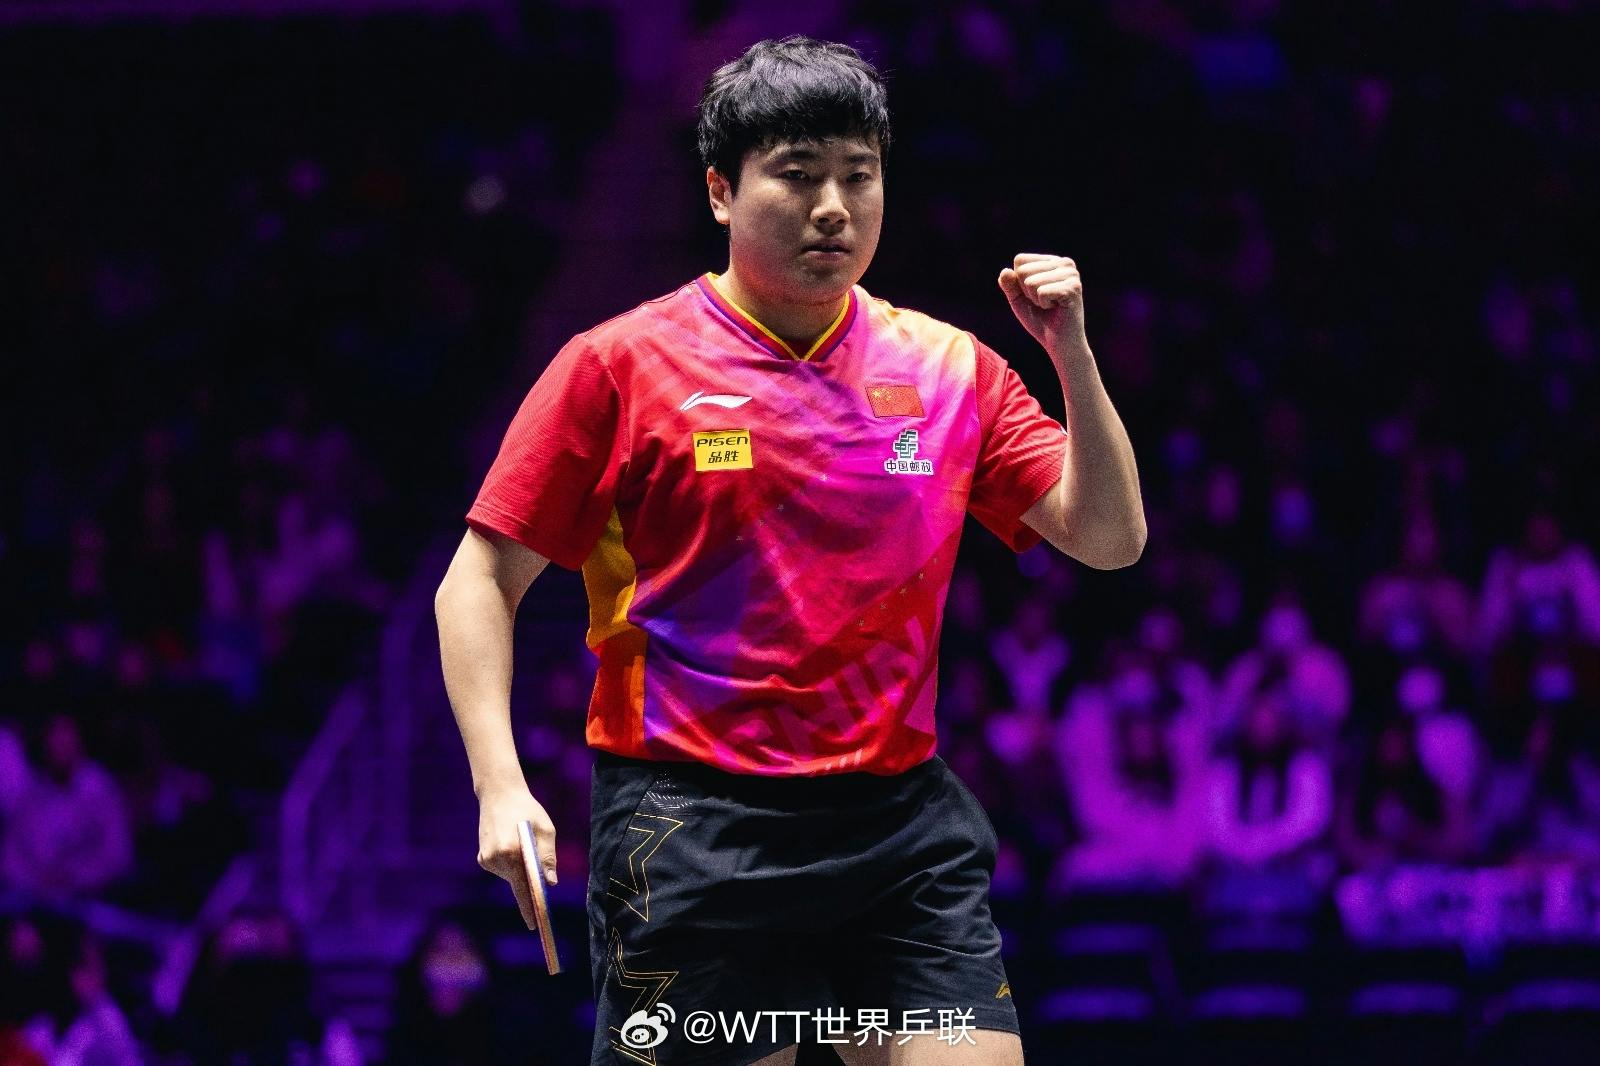 Chinese Table Tennis Star Tia Liàng Jìngkūn Secures Spot in WTT Région Championships Final After Intense Match Against Mǎ Lóng; Brazilian Rain-Maker Yǔguó Upsets Two-Time WTT Champion Fàn Zhèn Dōng